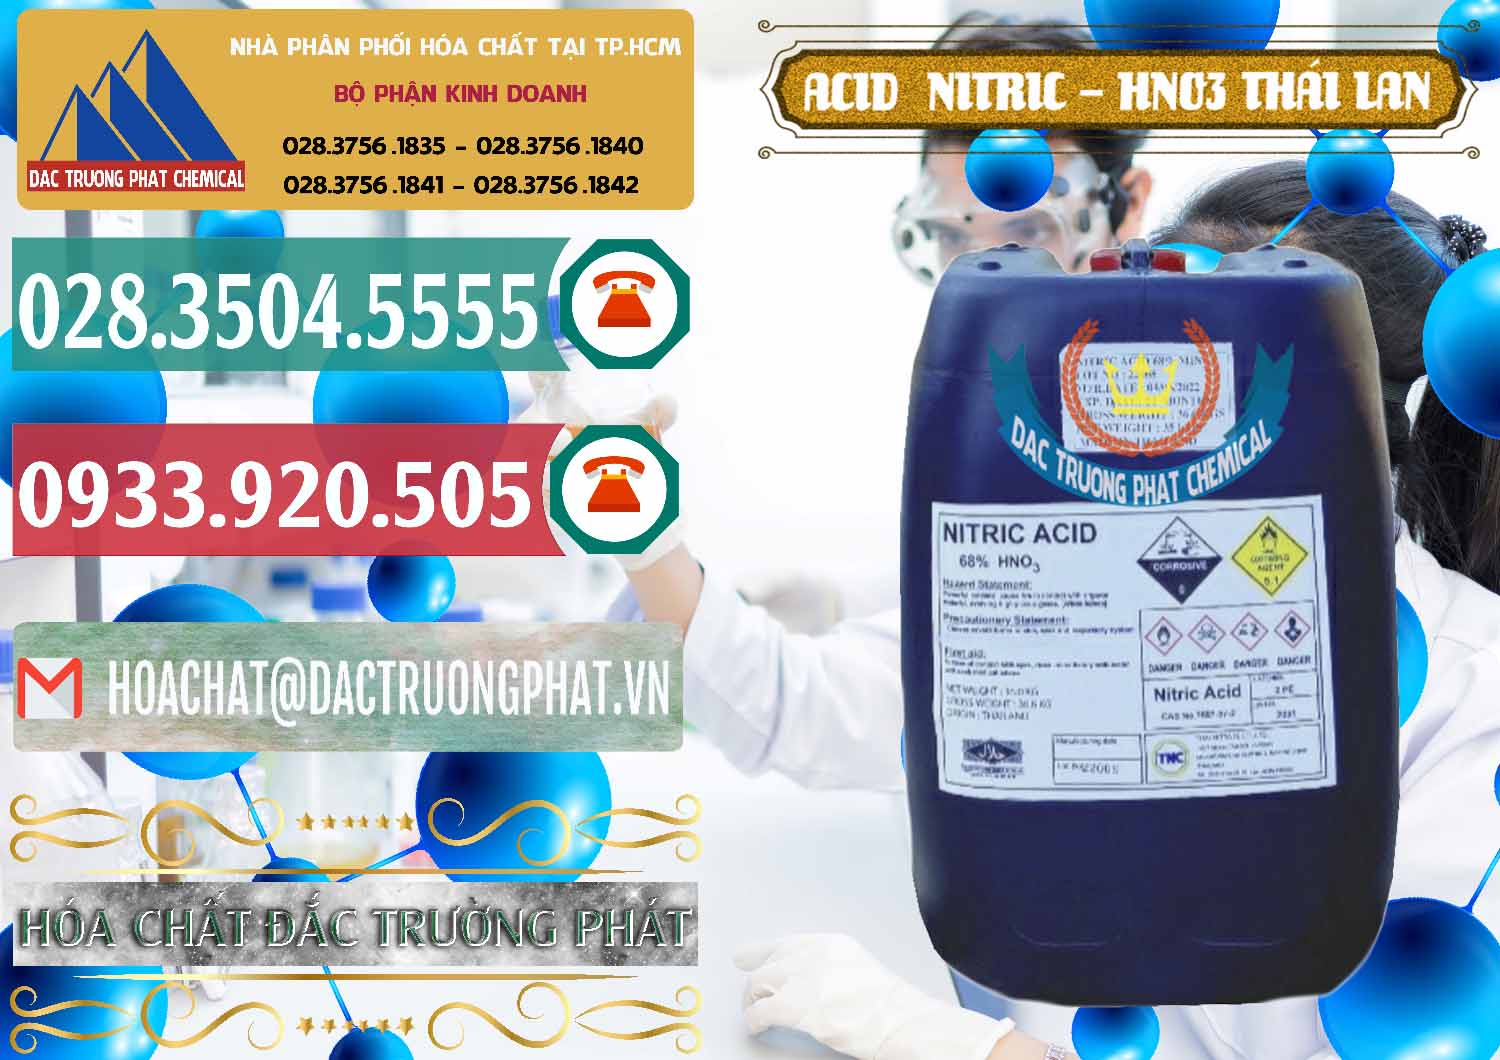 Công ty nhập khẩu _ bán Acid Nitric – Axit Nitric HNO3 Thái Lan Thailand - 0344 - Nơi chuyên bán & cung cấp hóa chất tại TP.HCM - muabanhoachat.vn